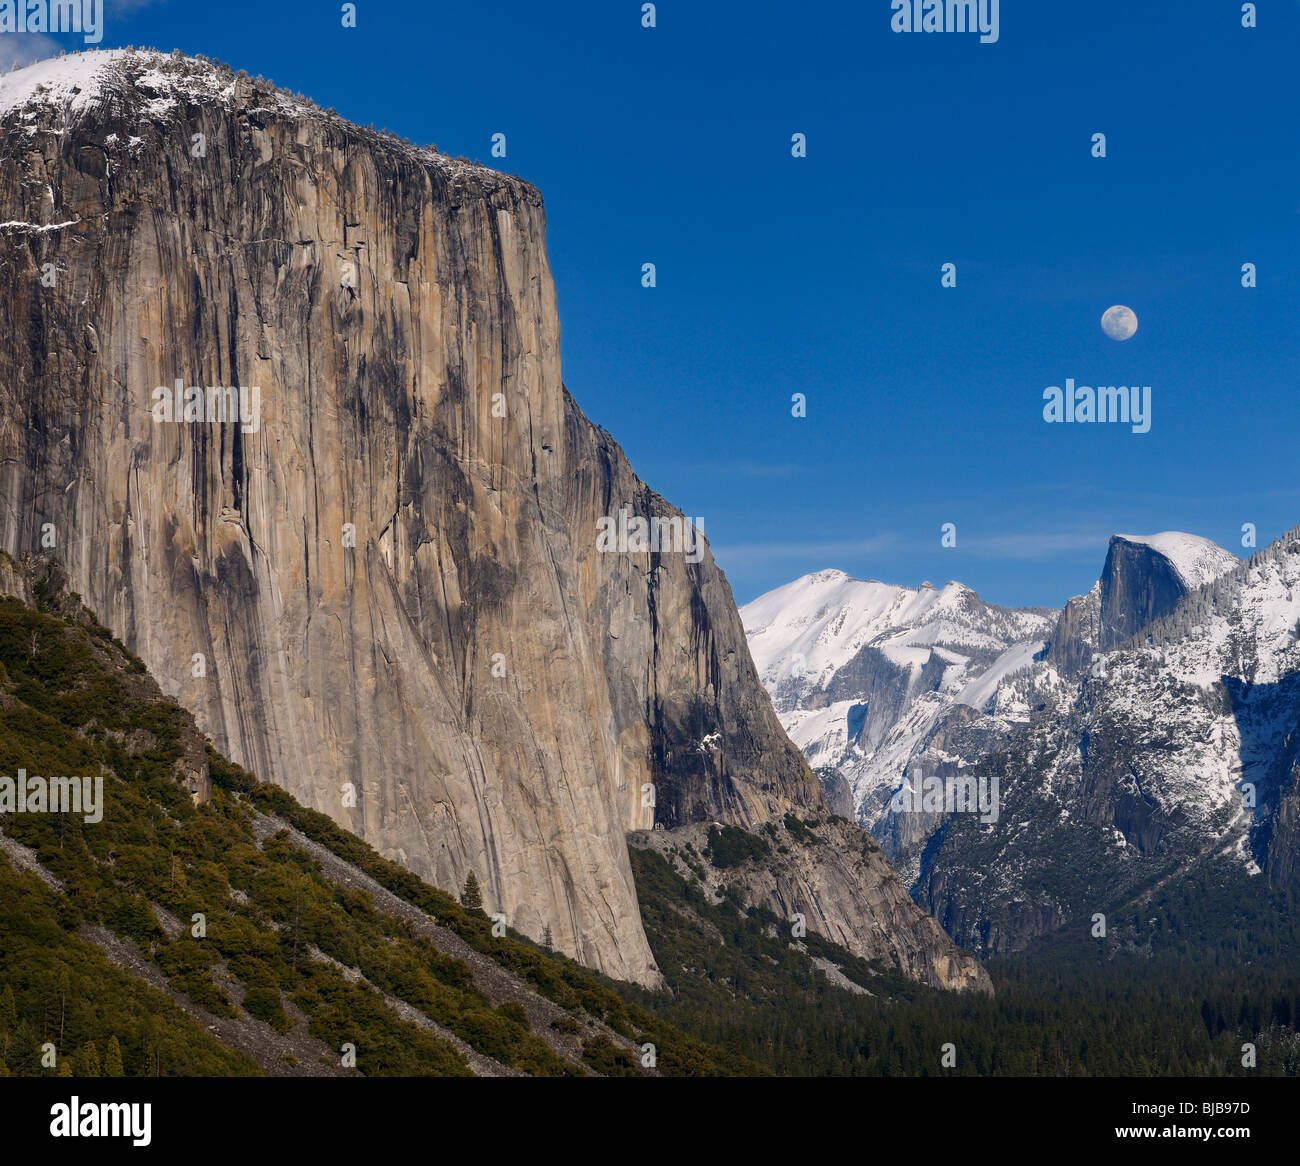 La vallée Yosemite de vue de tunnel avec El Capitan et half dome avec lever de pics couverts de neige yosemite national park california usa Banque D'Images